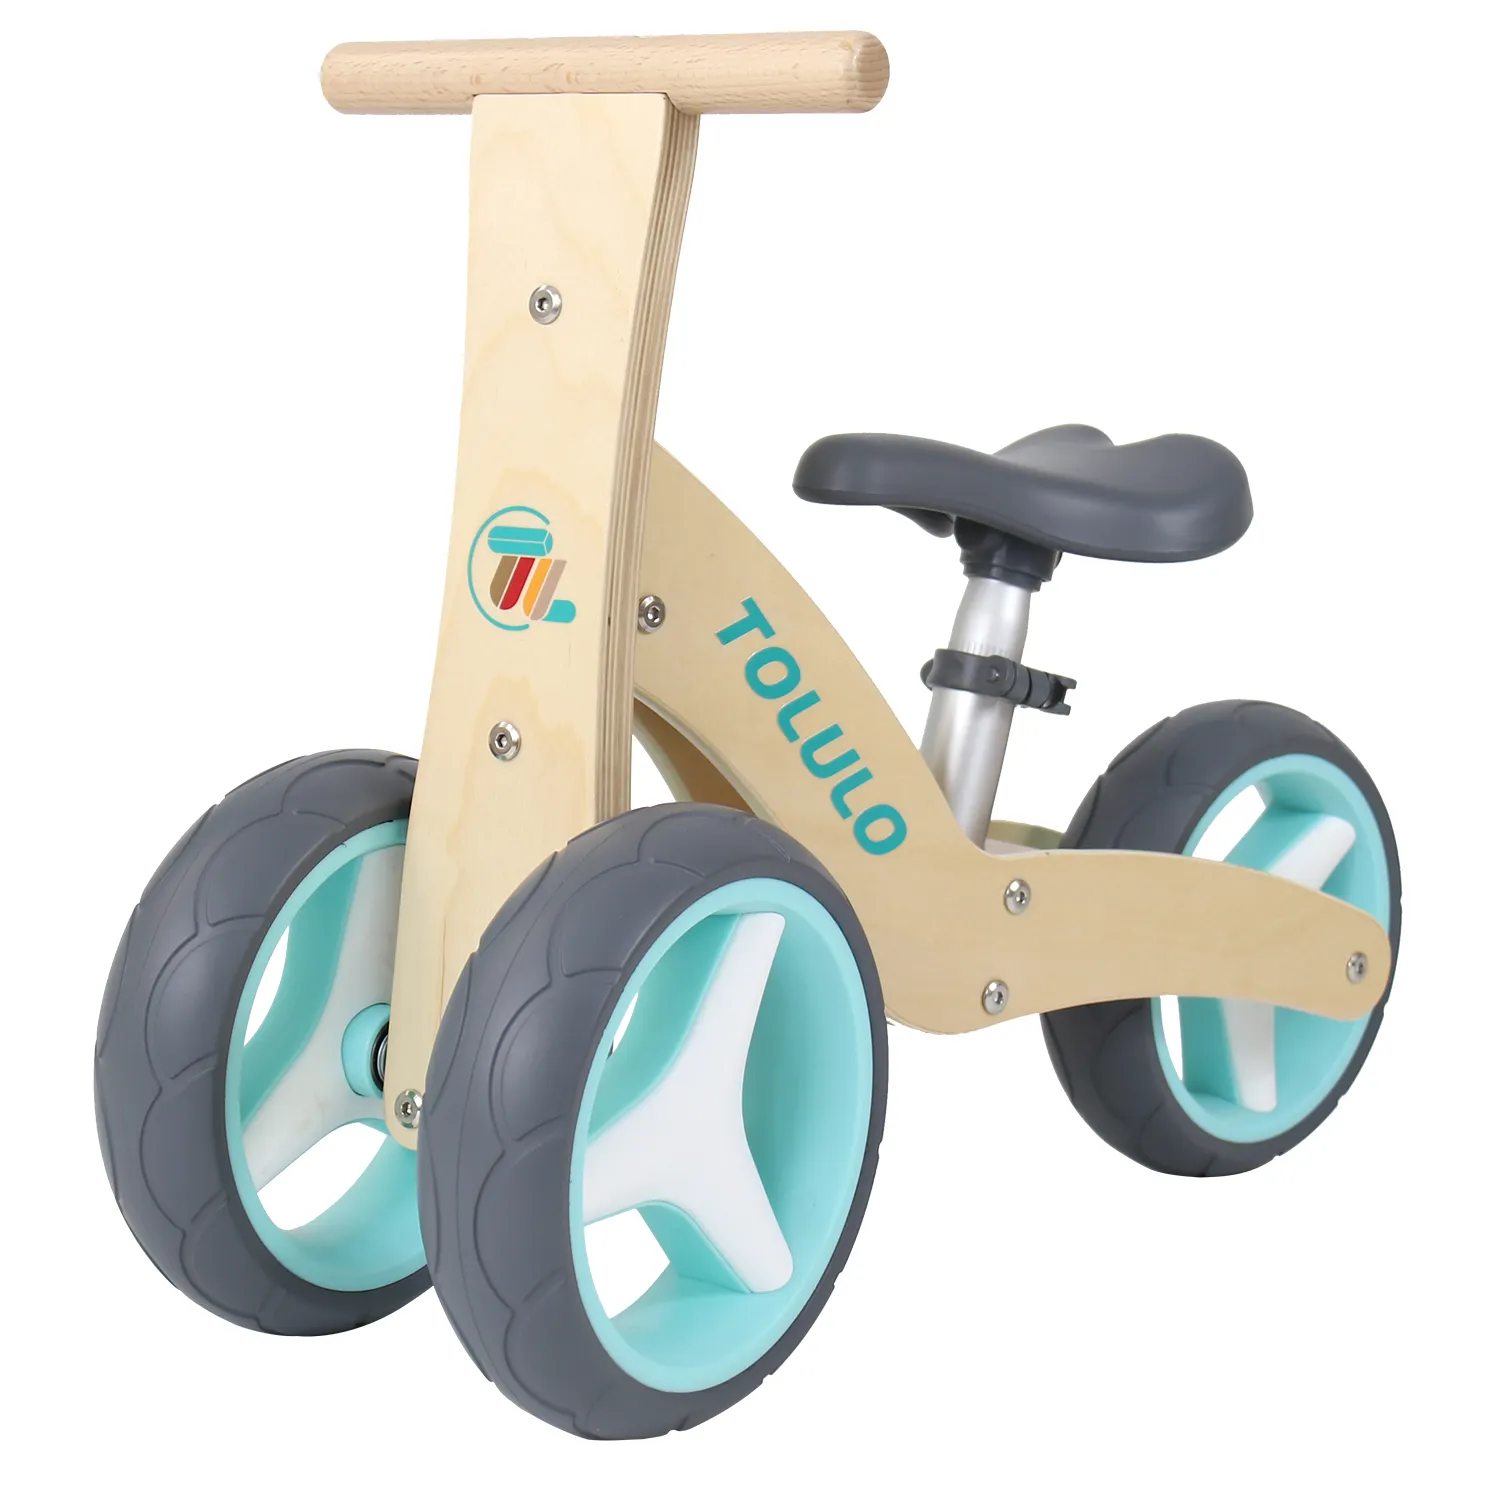 Дешевый мини-балансировочный велосипед для ребенка, 3-колесный балансировочный велосипед, детский деревянный детский ходок, Детская Езда на машине